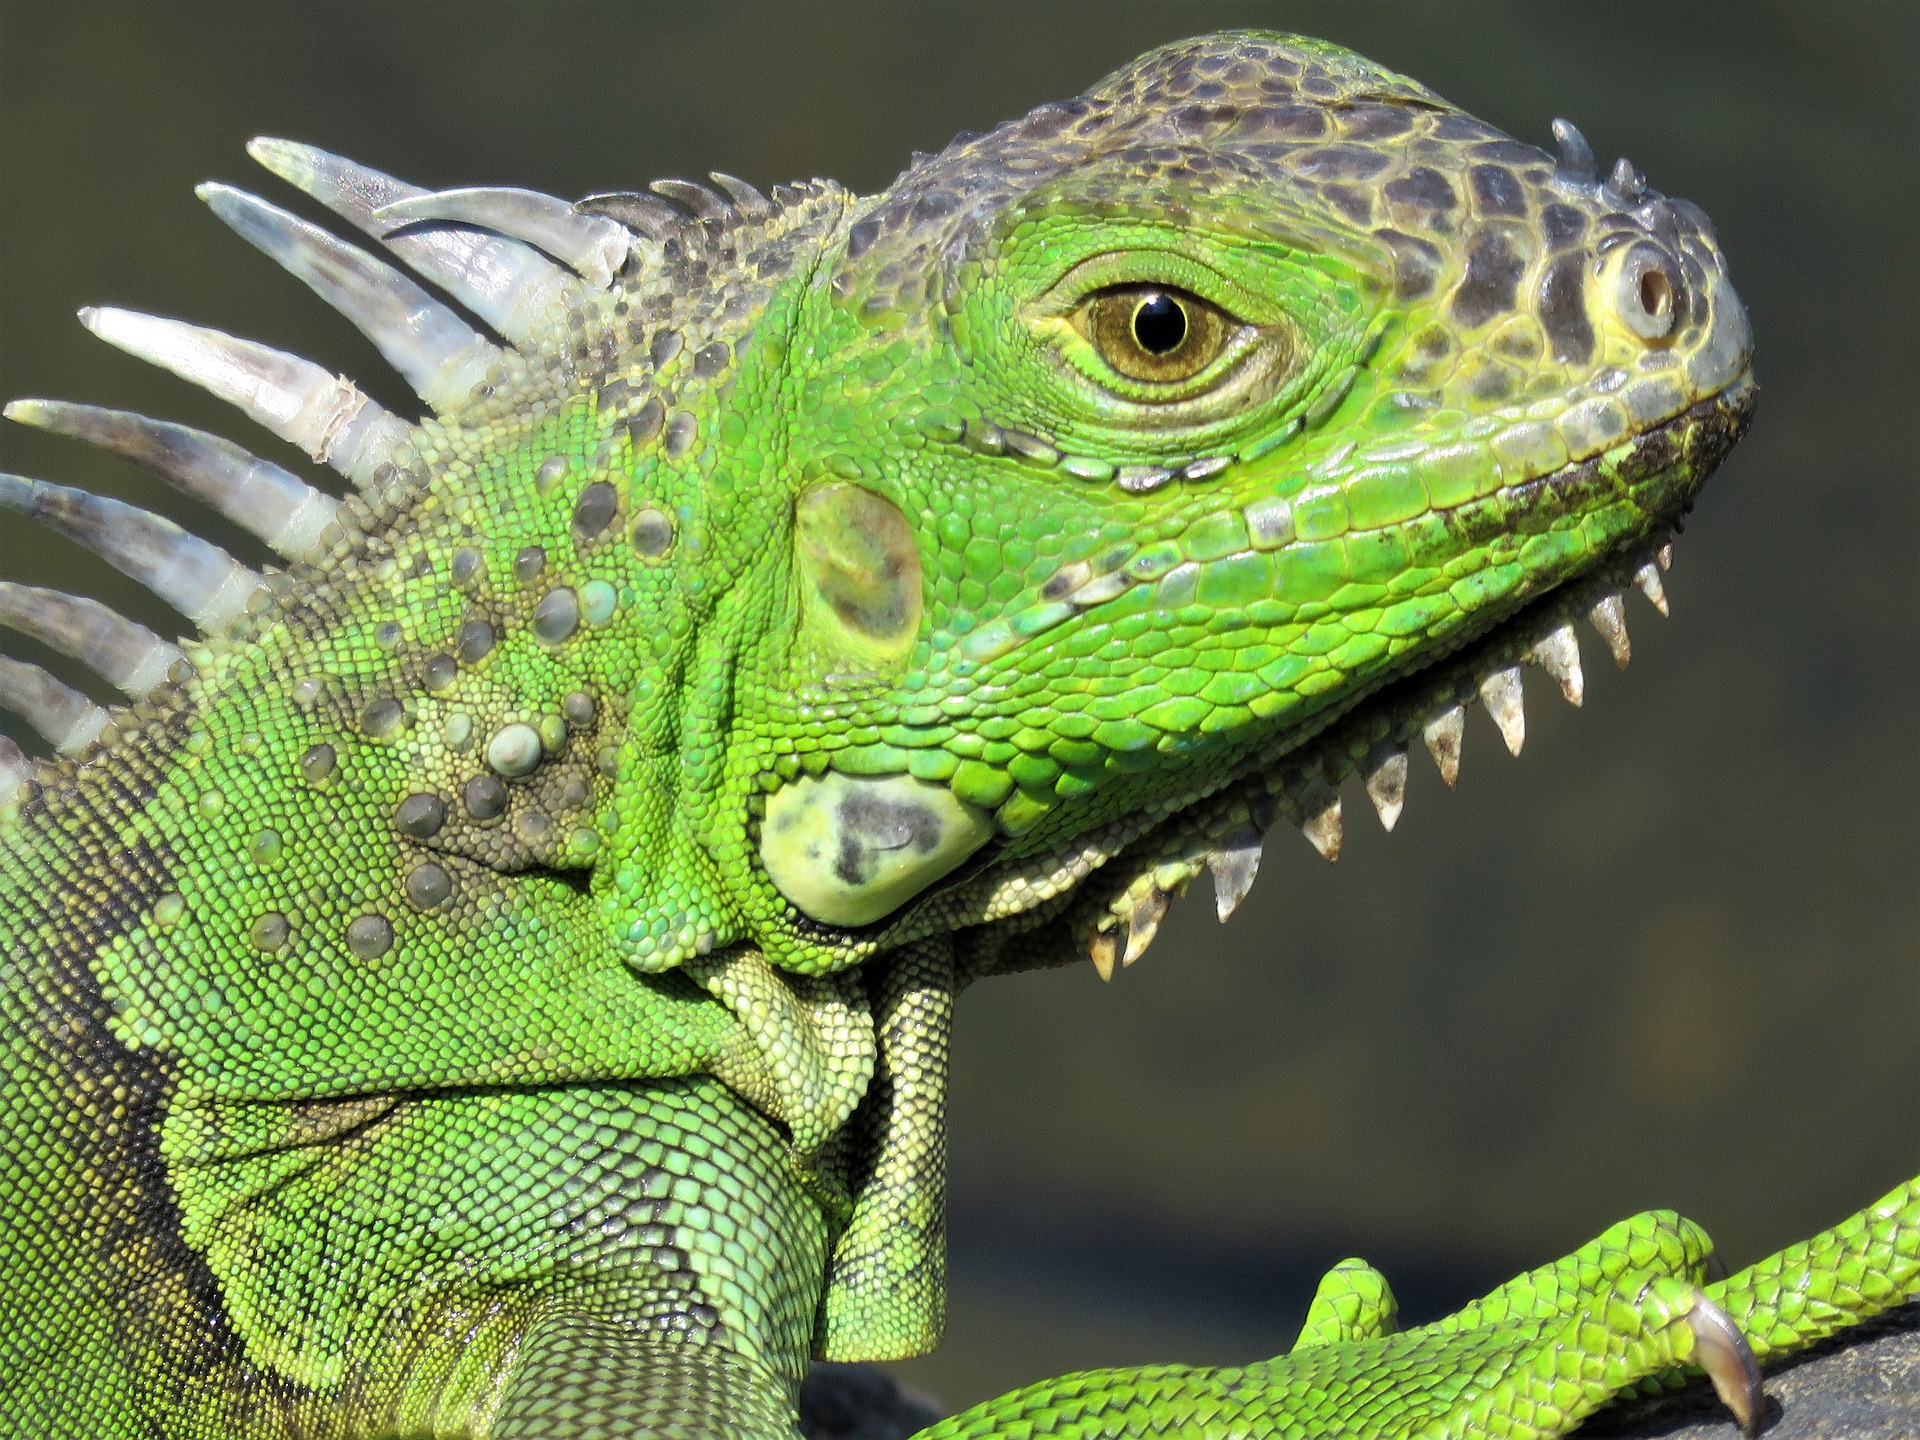 Žalioji iguana gyvena iki 20 metų. Suaugusi iguana gali pasiekti 1,5 m ilgį.